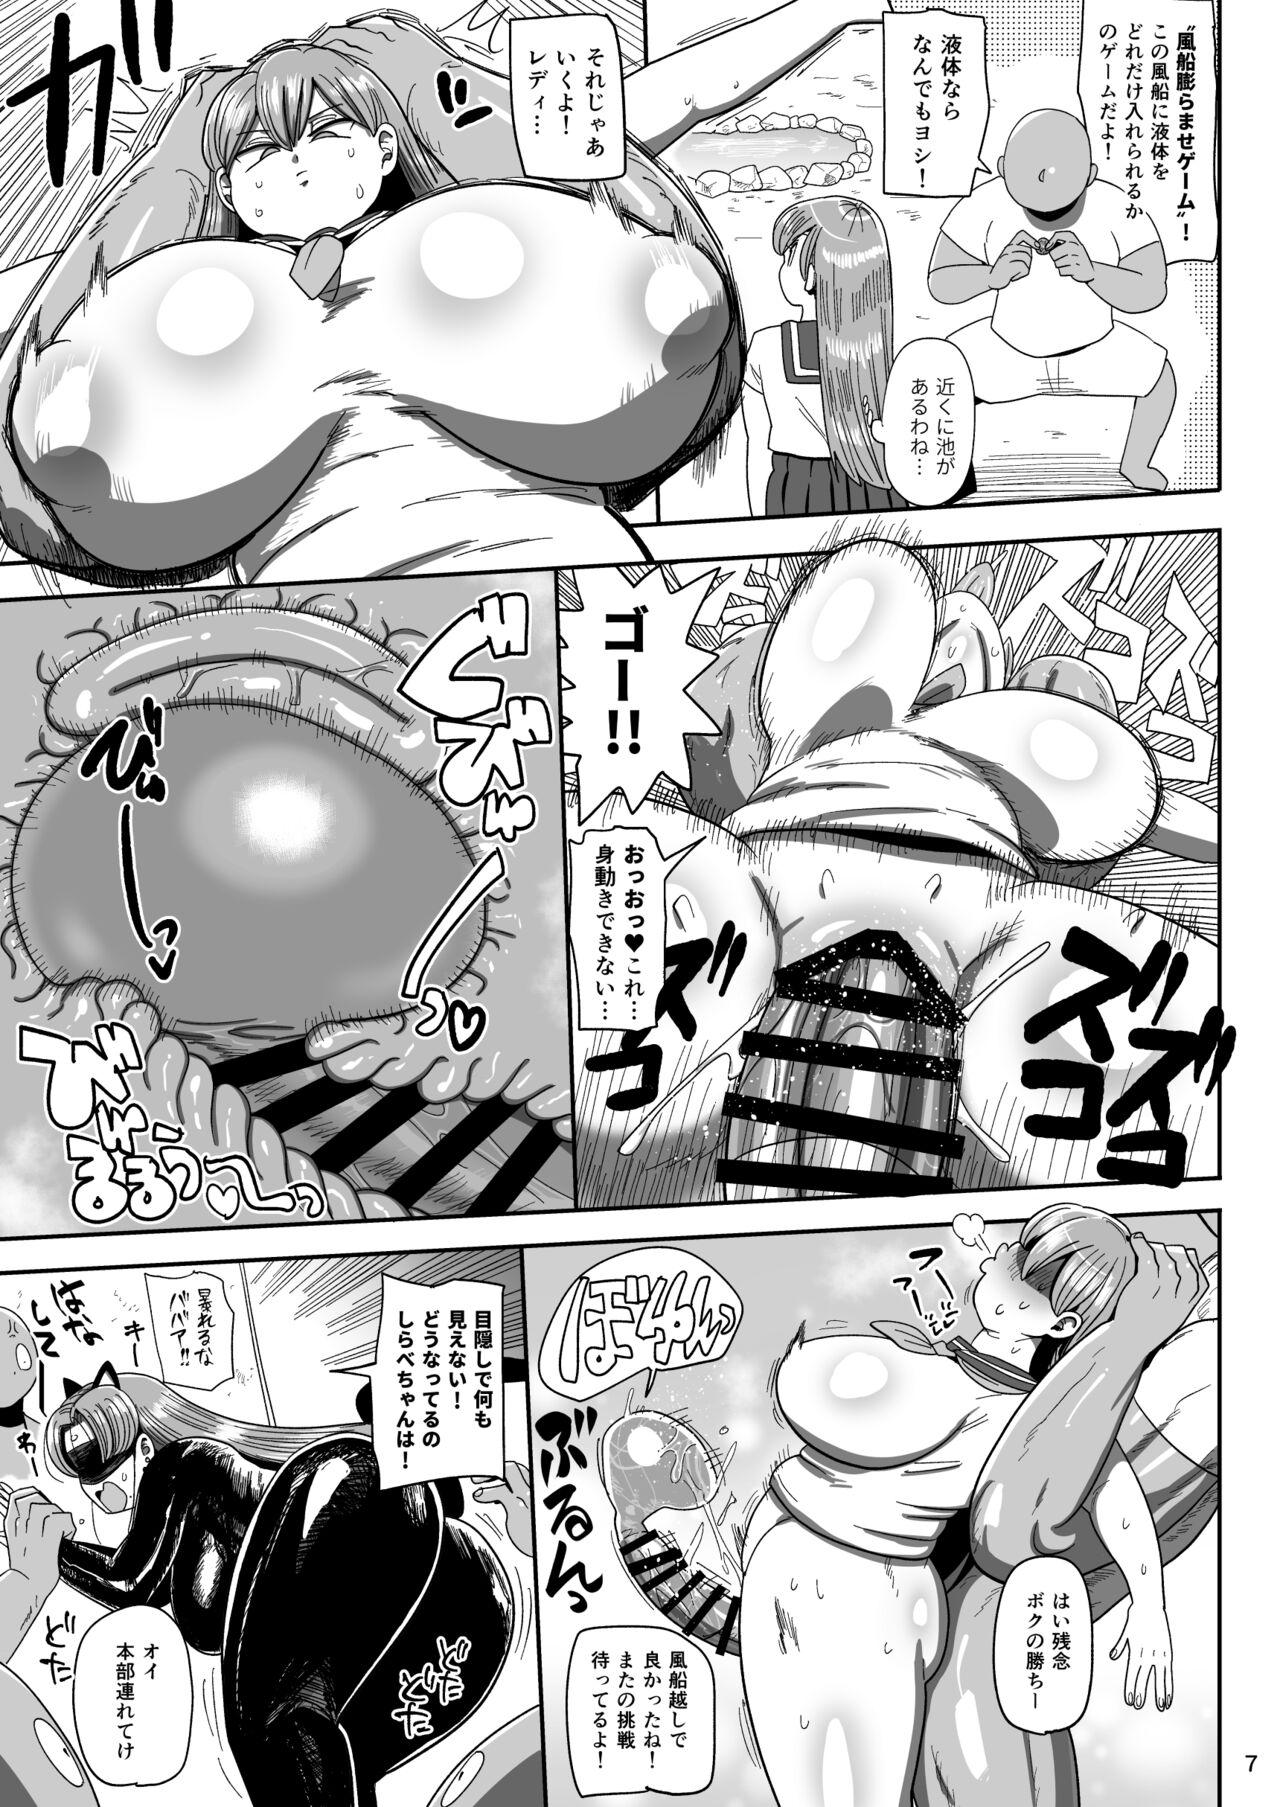 Lick Nandemo Chousa Mama Kuma Shizue ha TEIKO ga dekinai - Original Innocent - Page 6